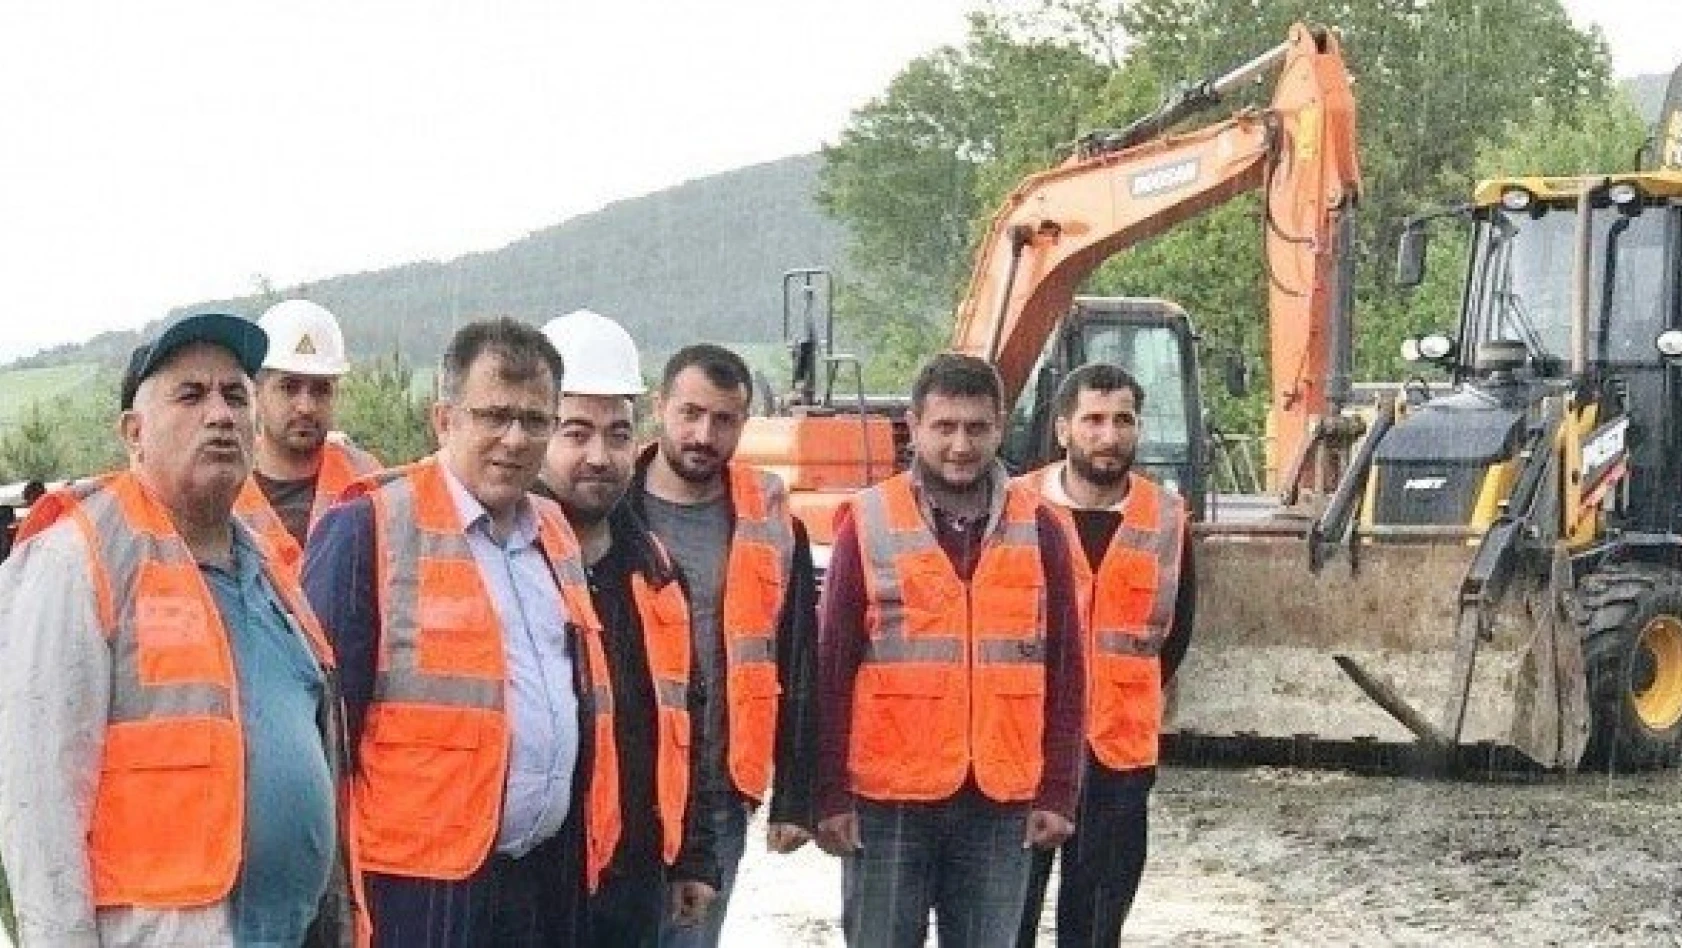 Taşköprü Belediyesi, ilçede çalışmalarını sürdürüyor